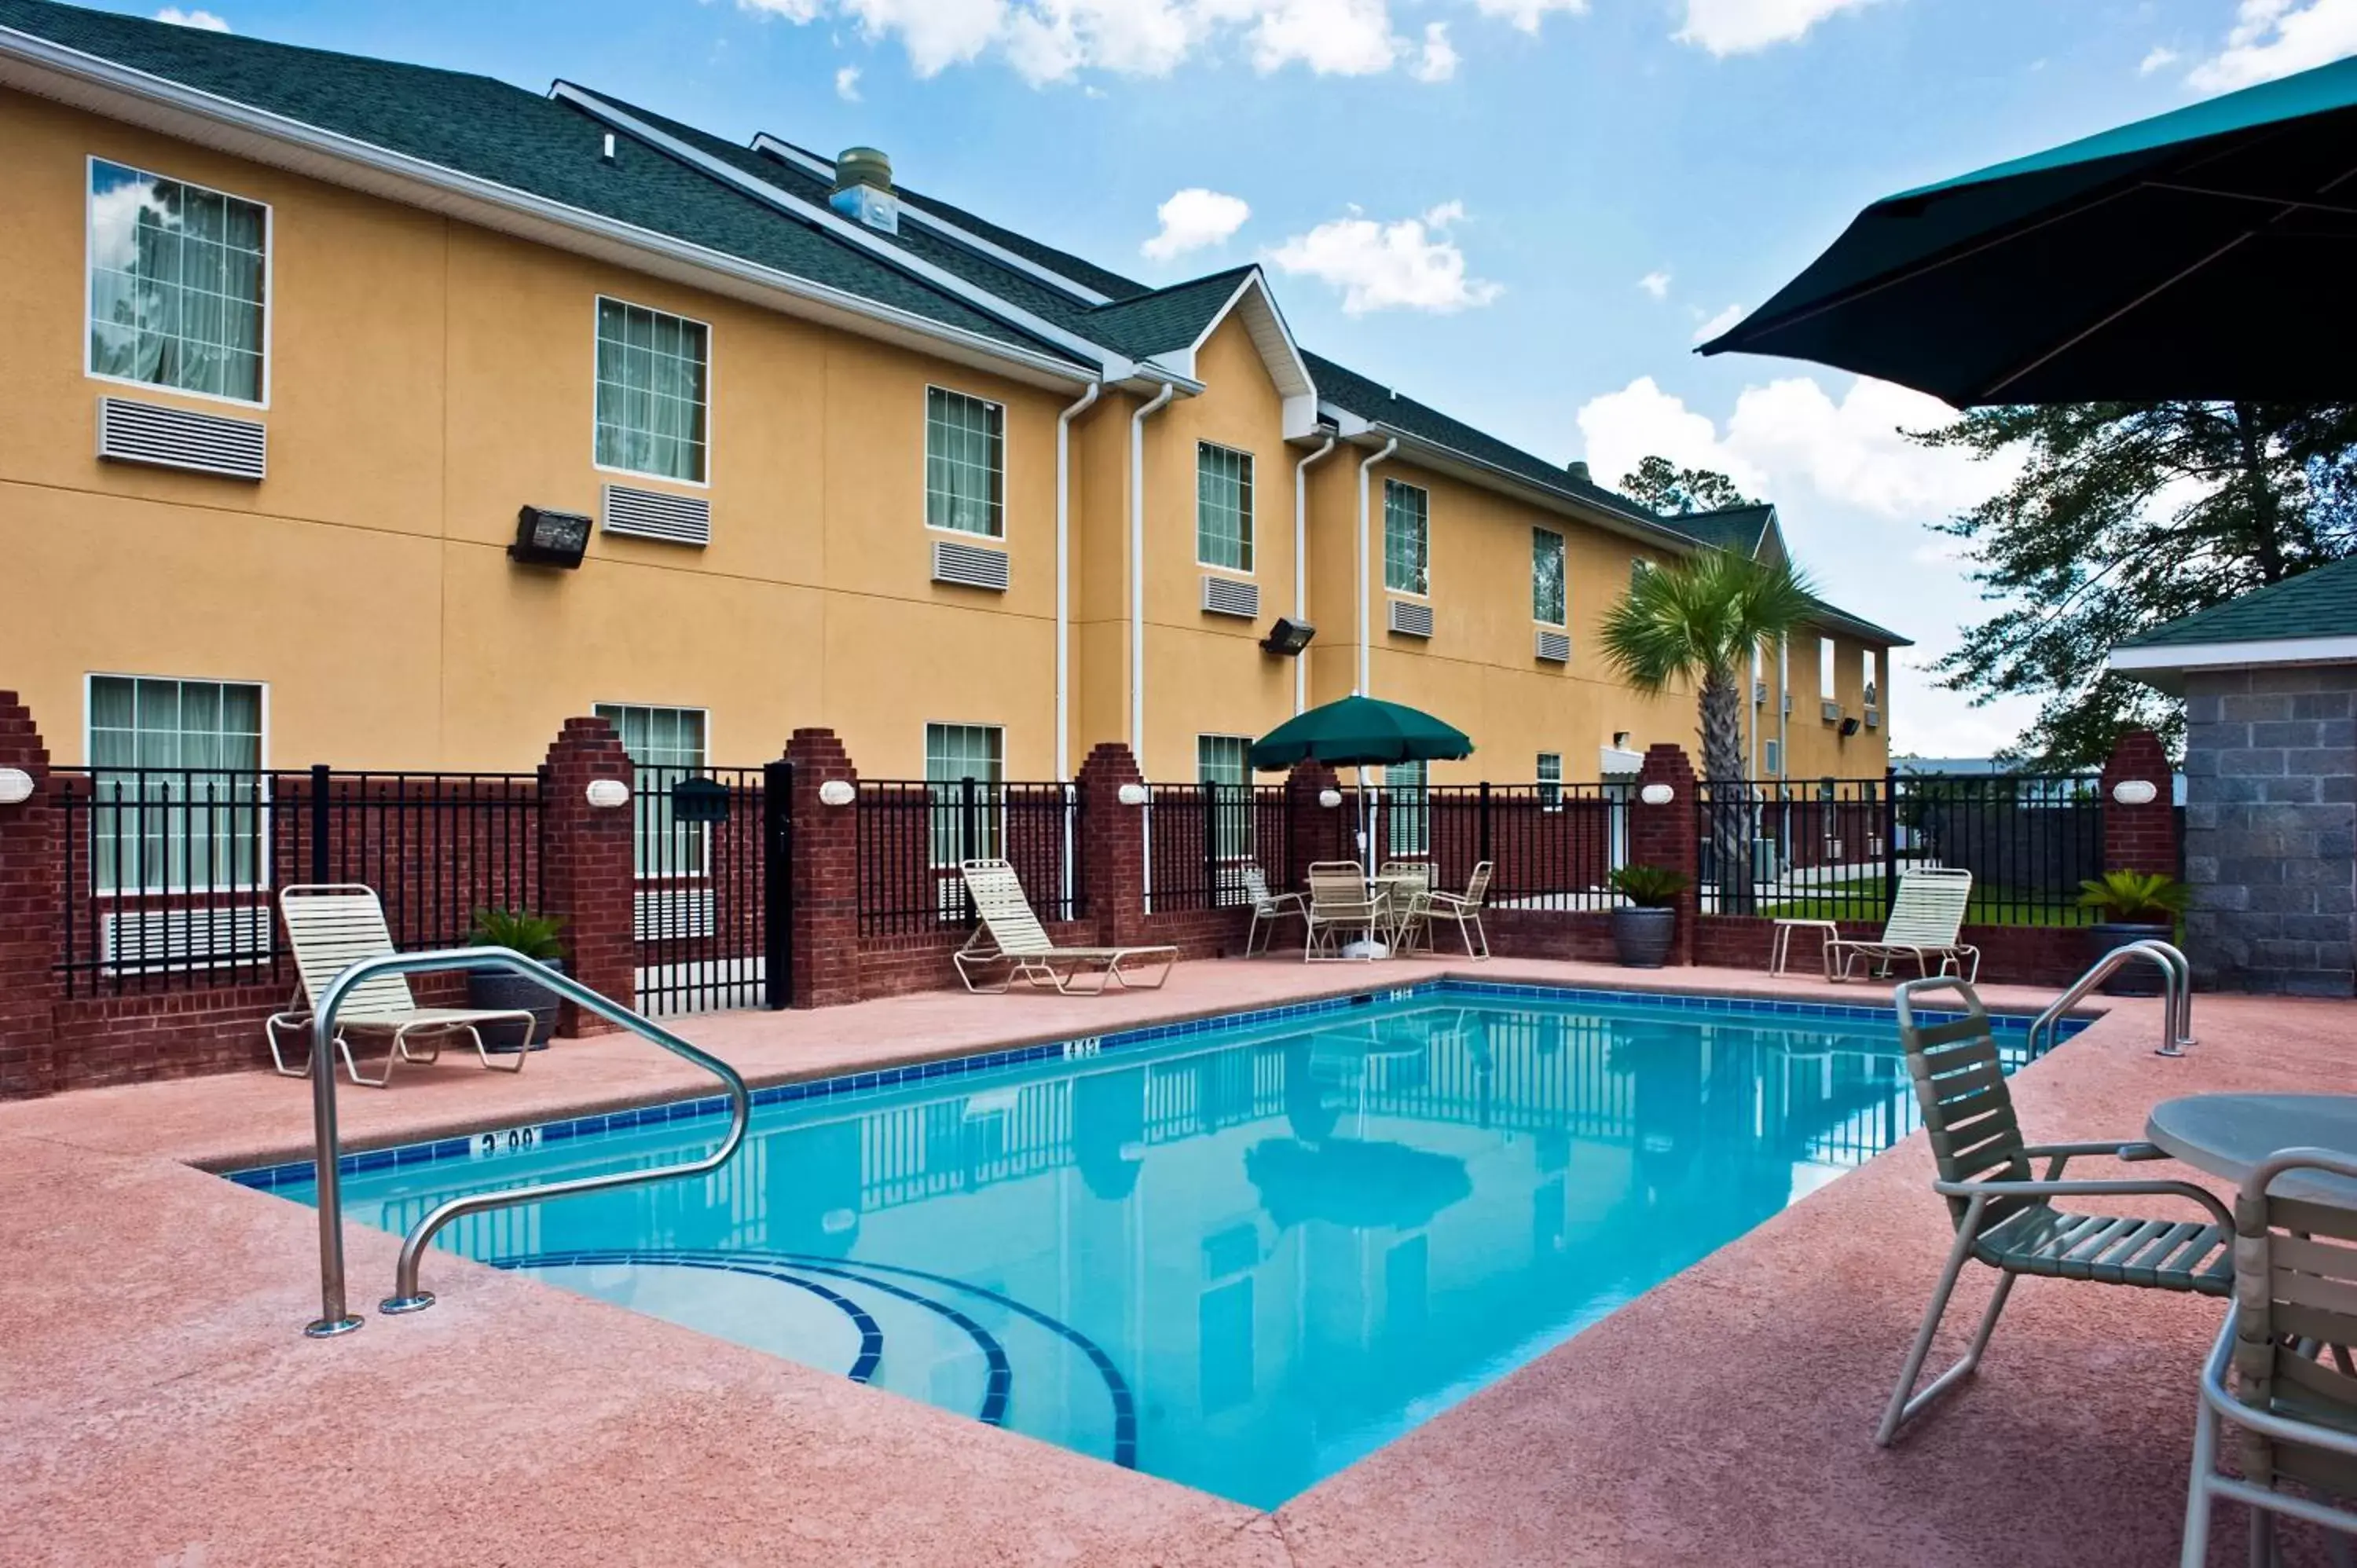 Property building, Swimming Pool in Best Western Plus Bradbury Inn and Suites